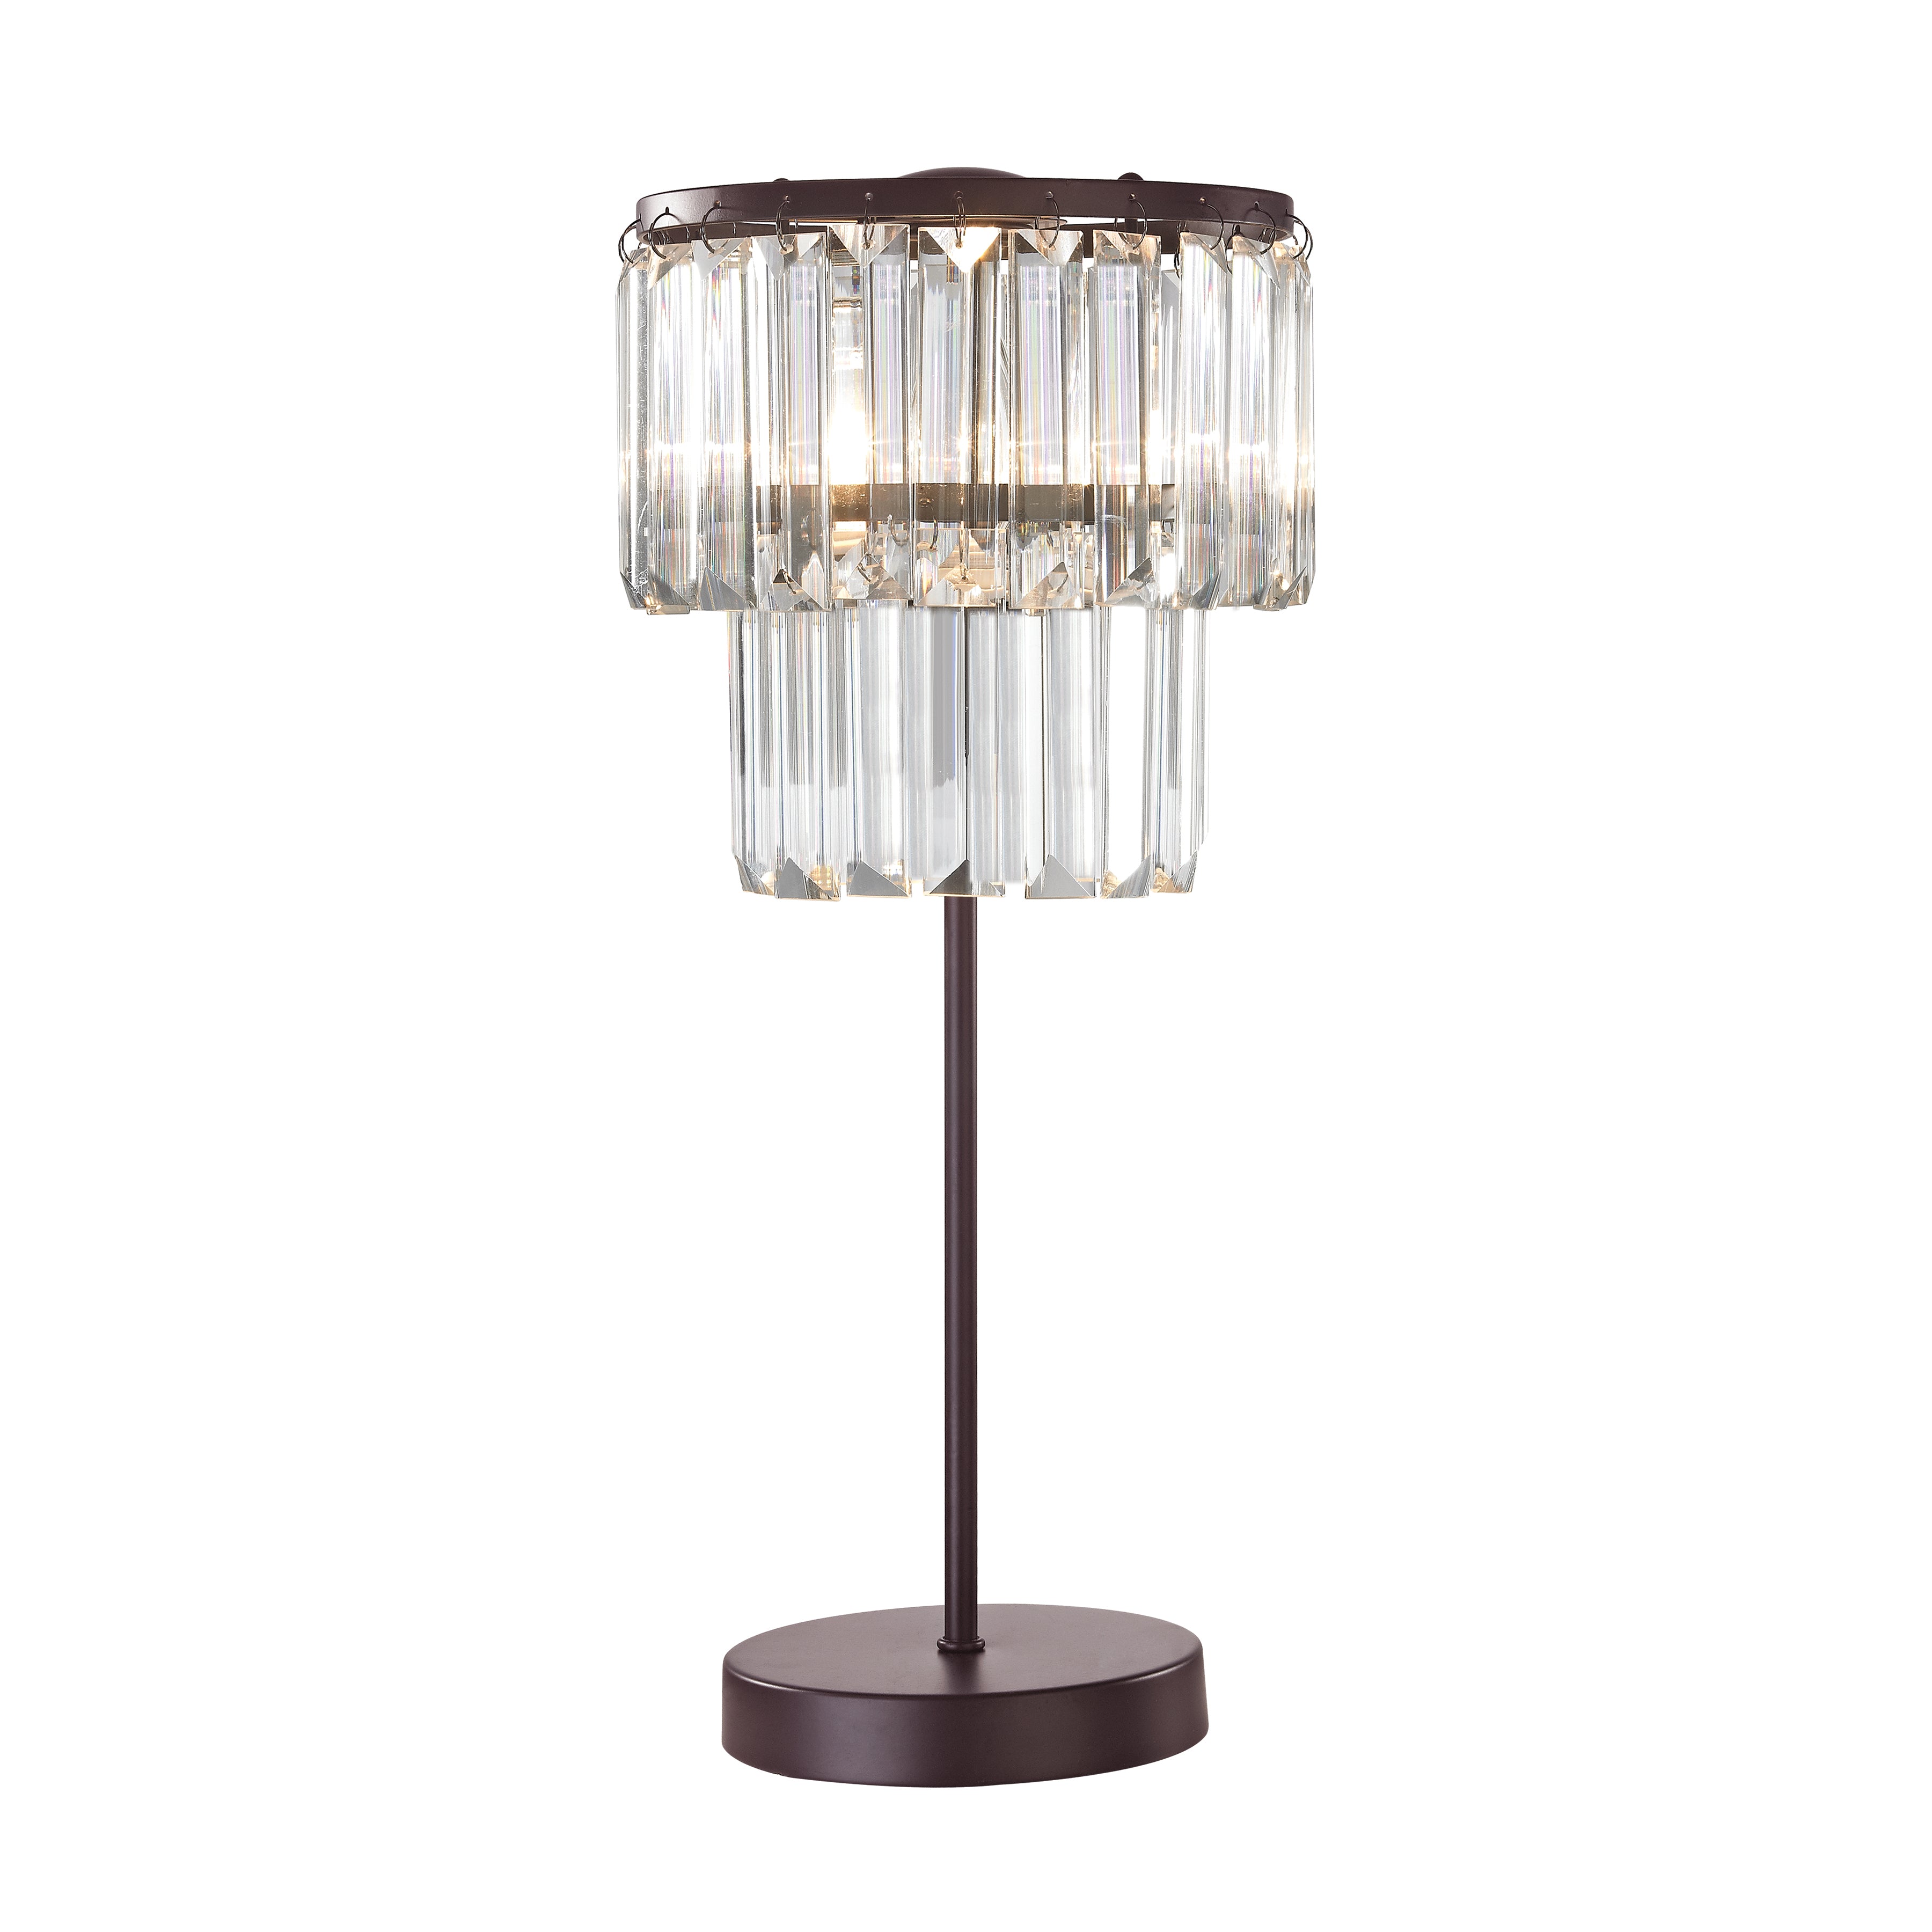 Antoinette Light Table Lamp